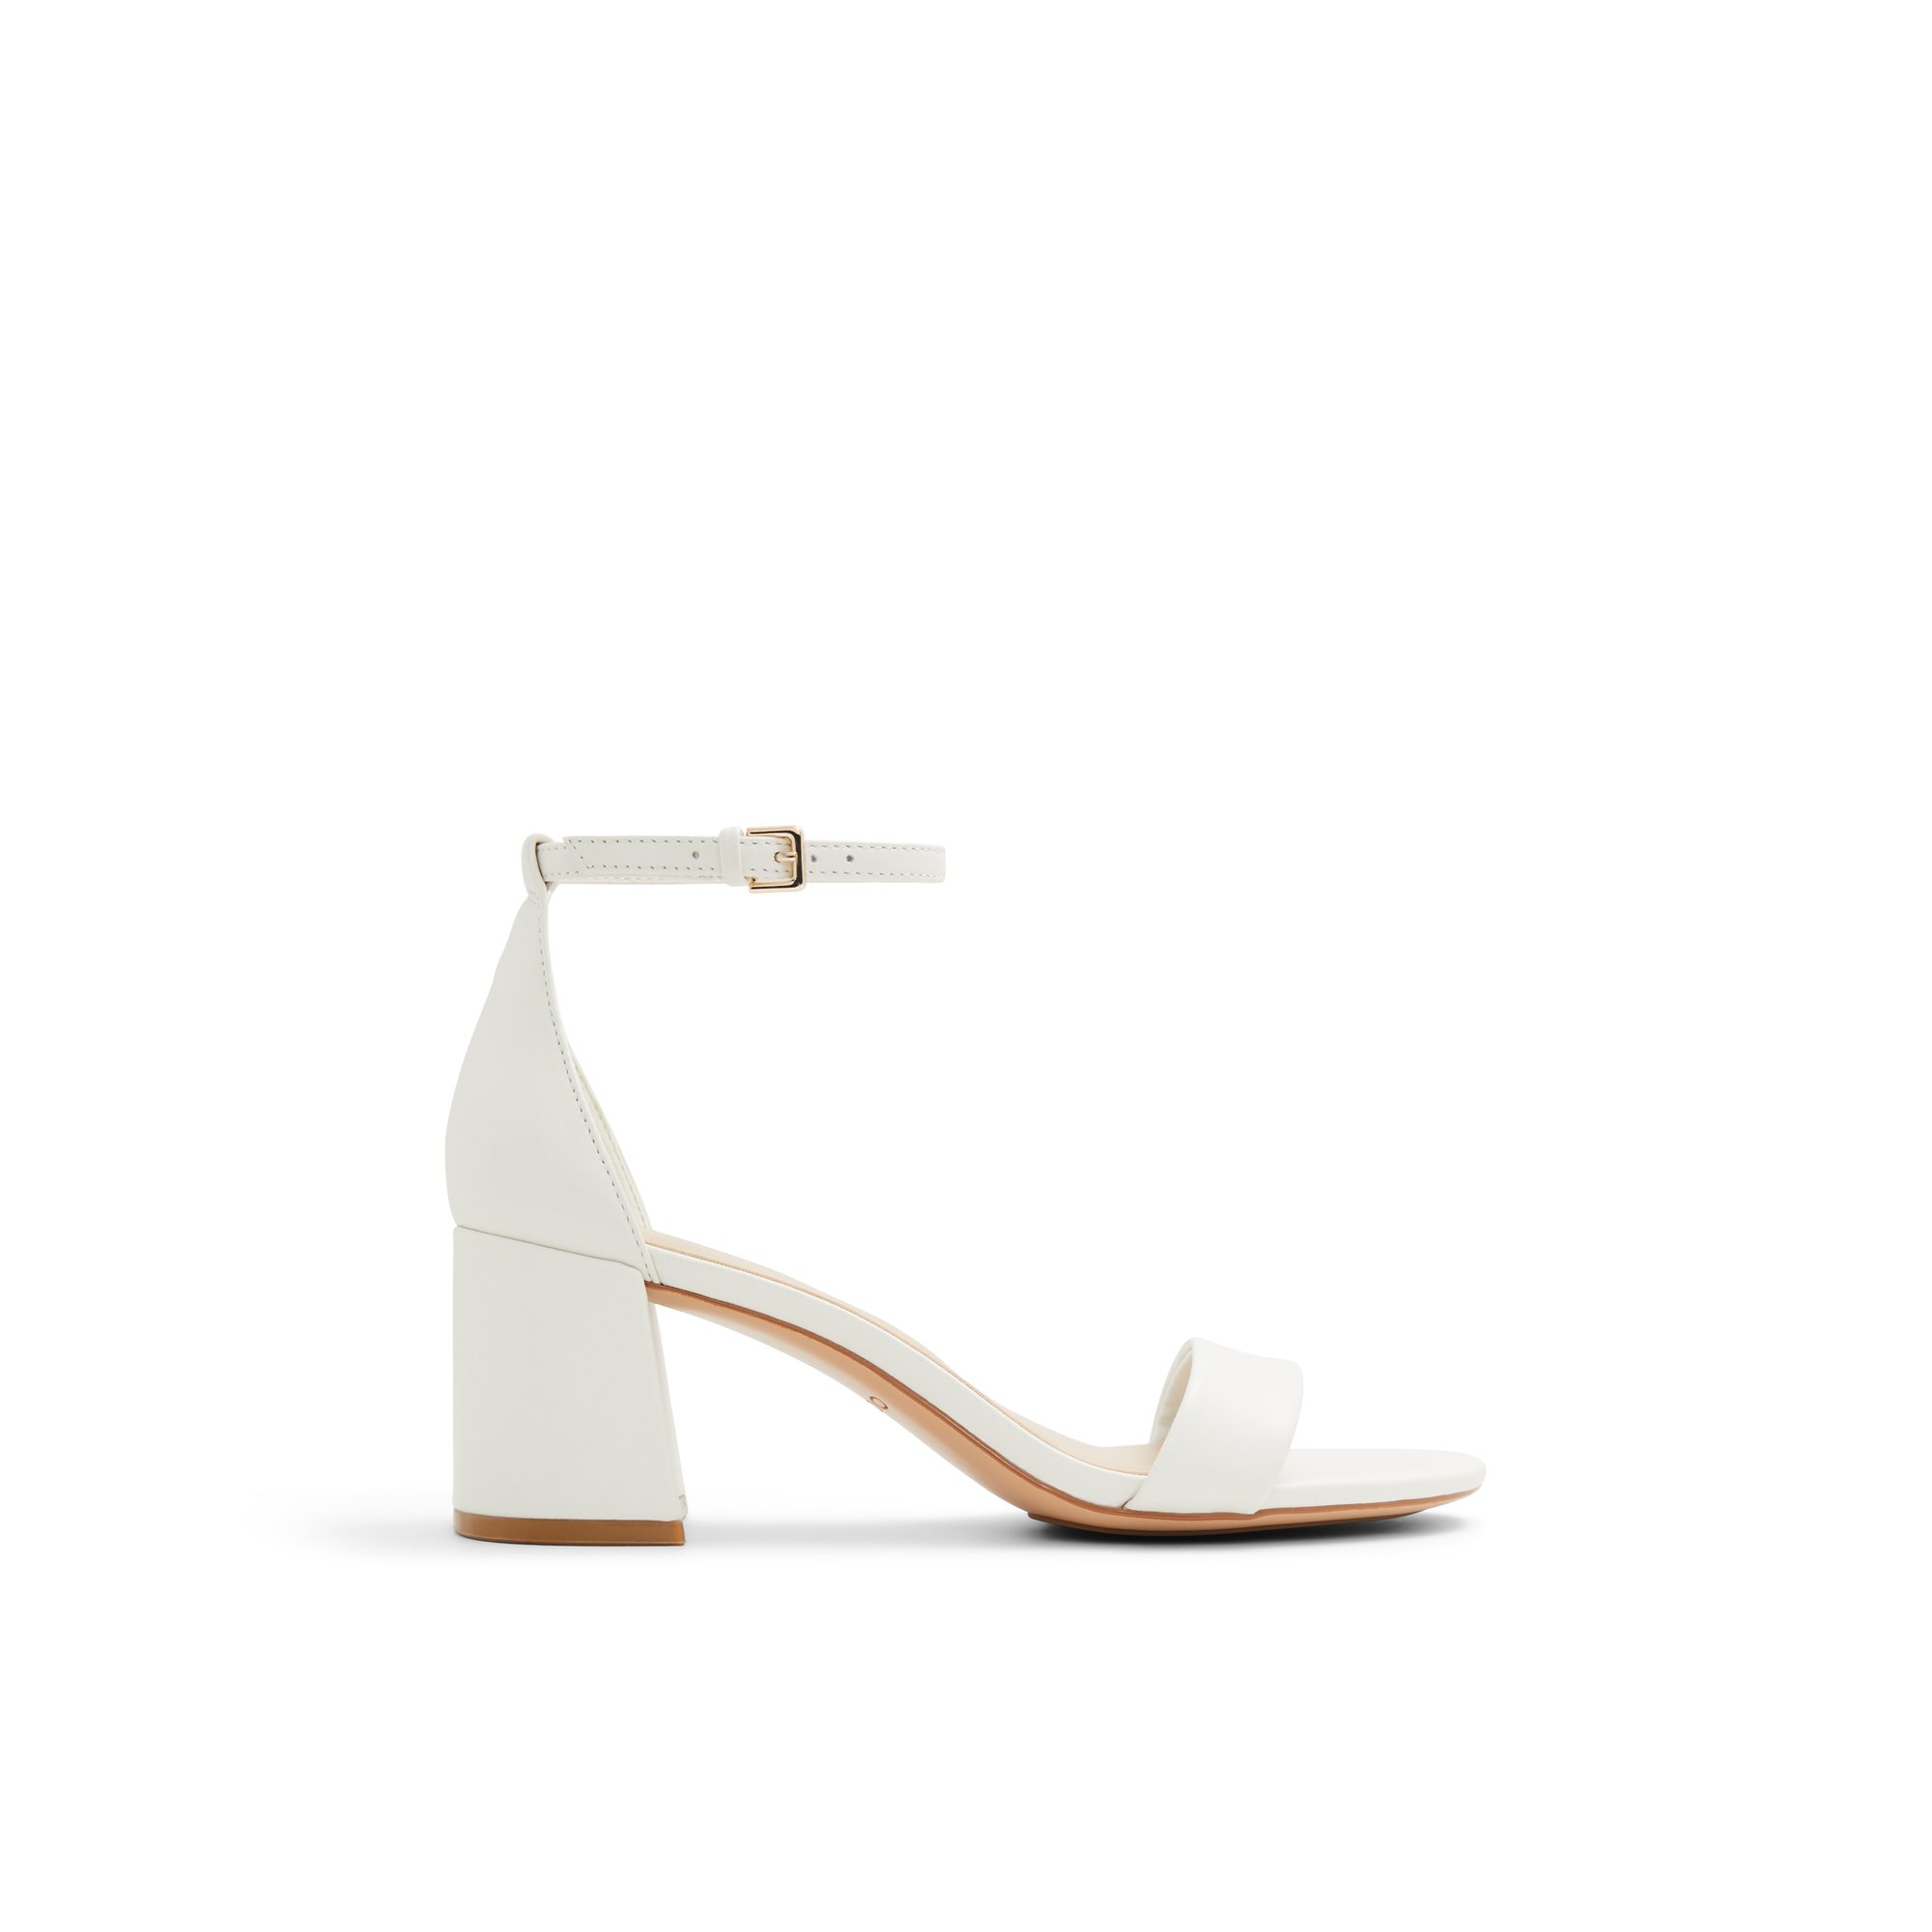 ALDO Pristine - Women's Sandals Strappy - White